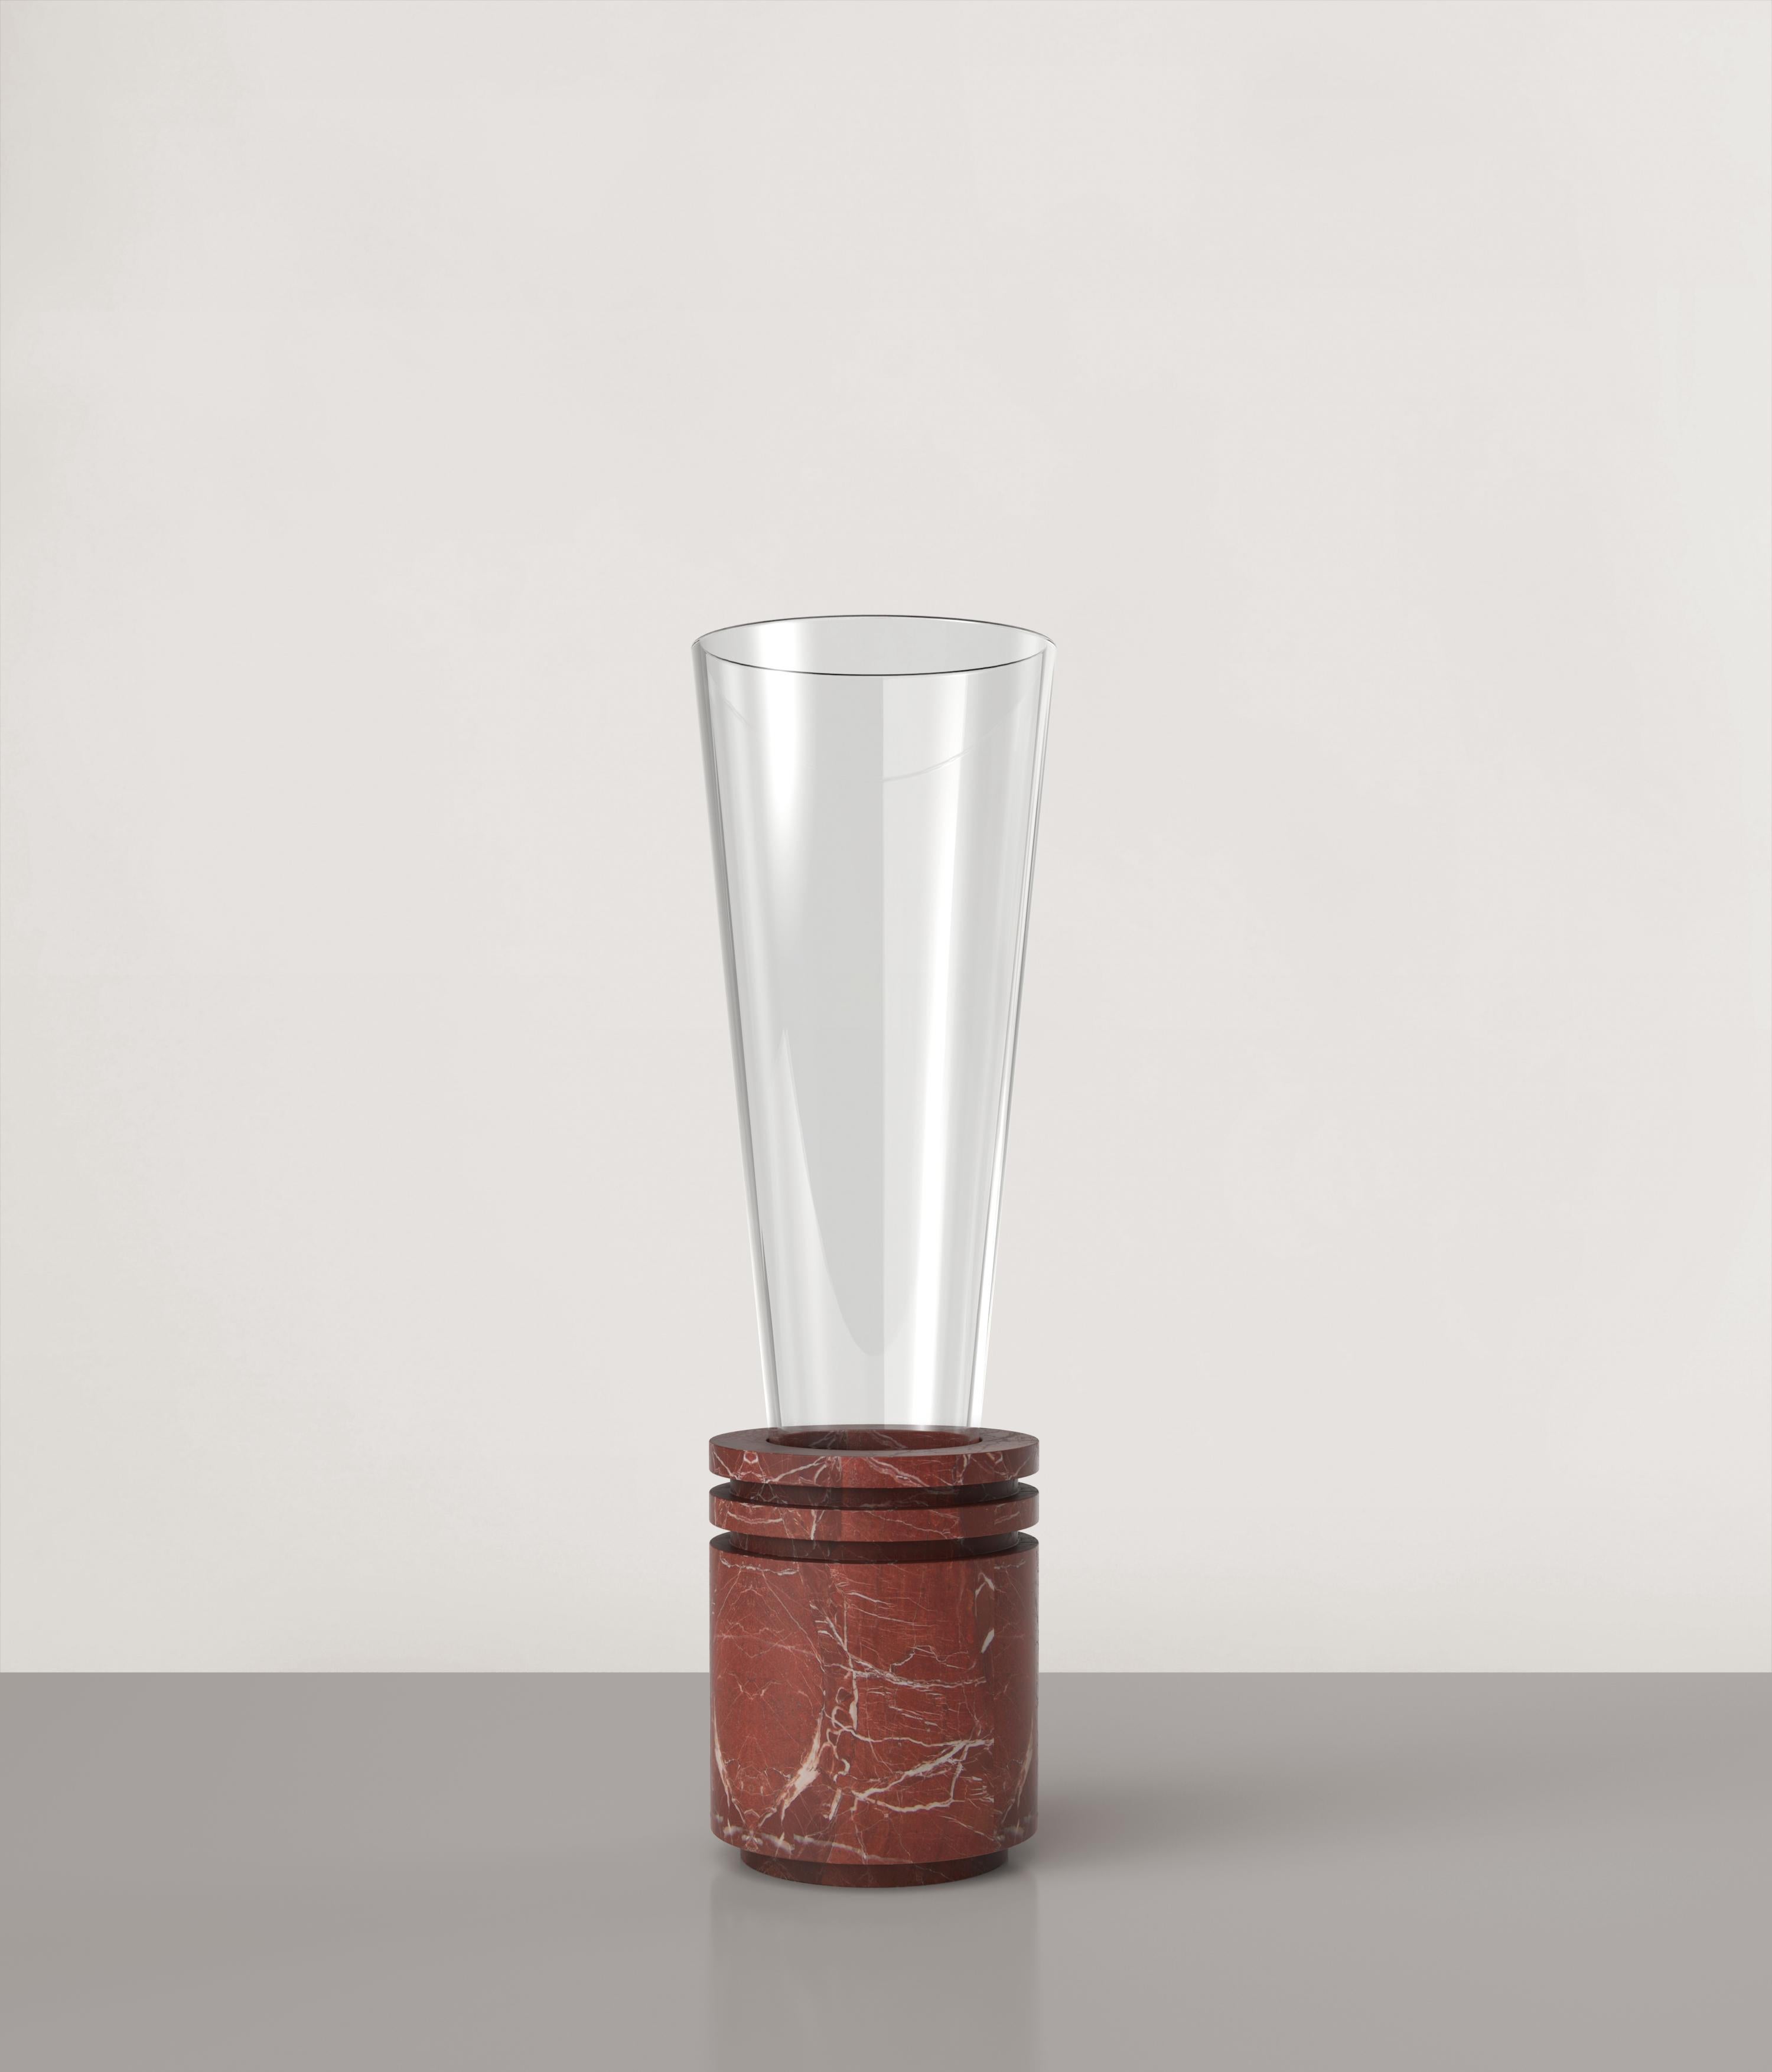 Vase Opera V2 par Edizione Limitata
Edition limitée à 150 pièces. Signés et numérotés.
Dimensions : D12 x H40 cm
Matériaux : Rosso Balmoral + verre brillant
Disponible également en différentes couleurs.

Opera est une collection de vases sculptés du